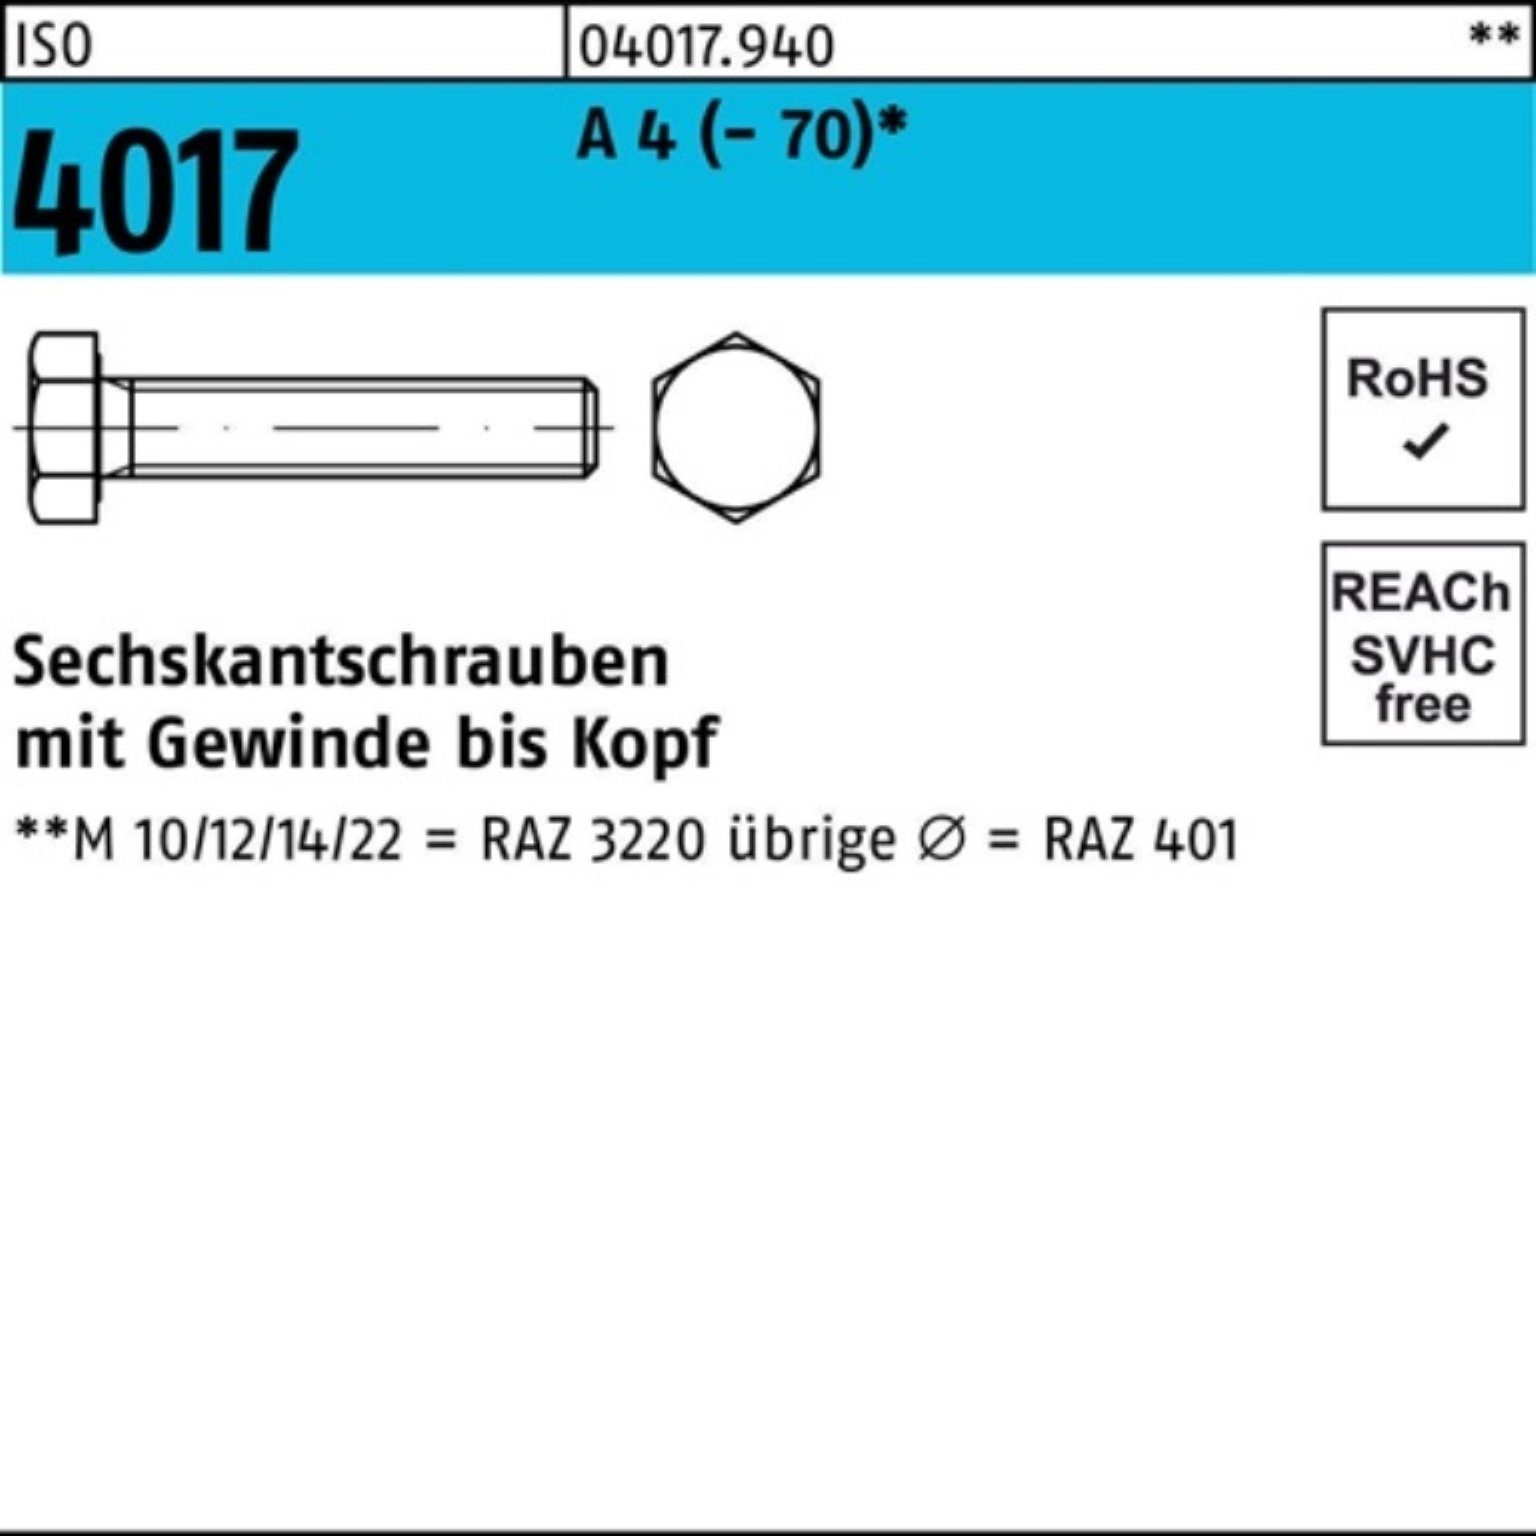 Bufab Sechskantschraube 100er Pack Sechskantschraube ISO VG I 1 A Stück 4 M18x 4017 40 (70)